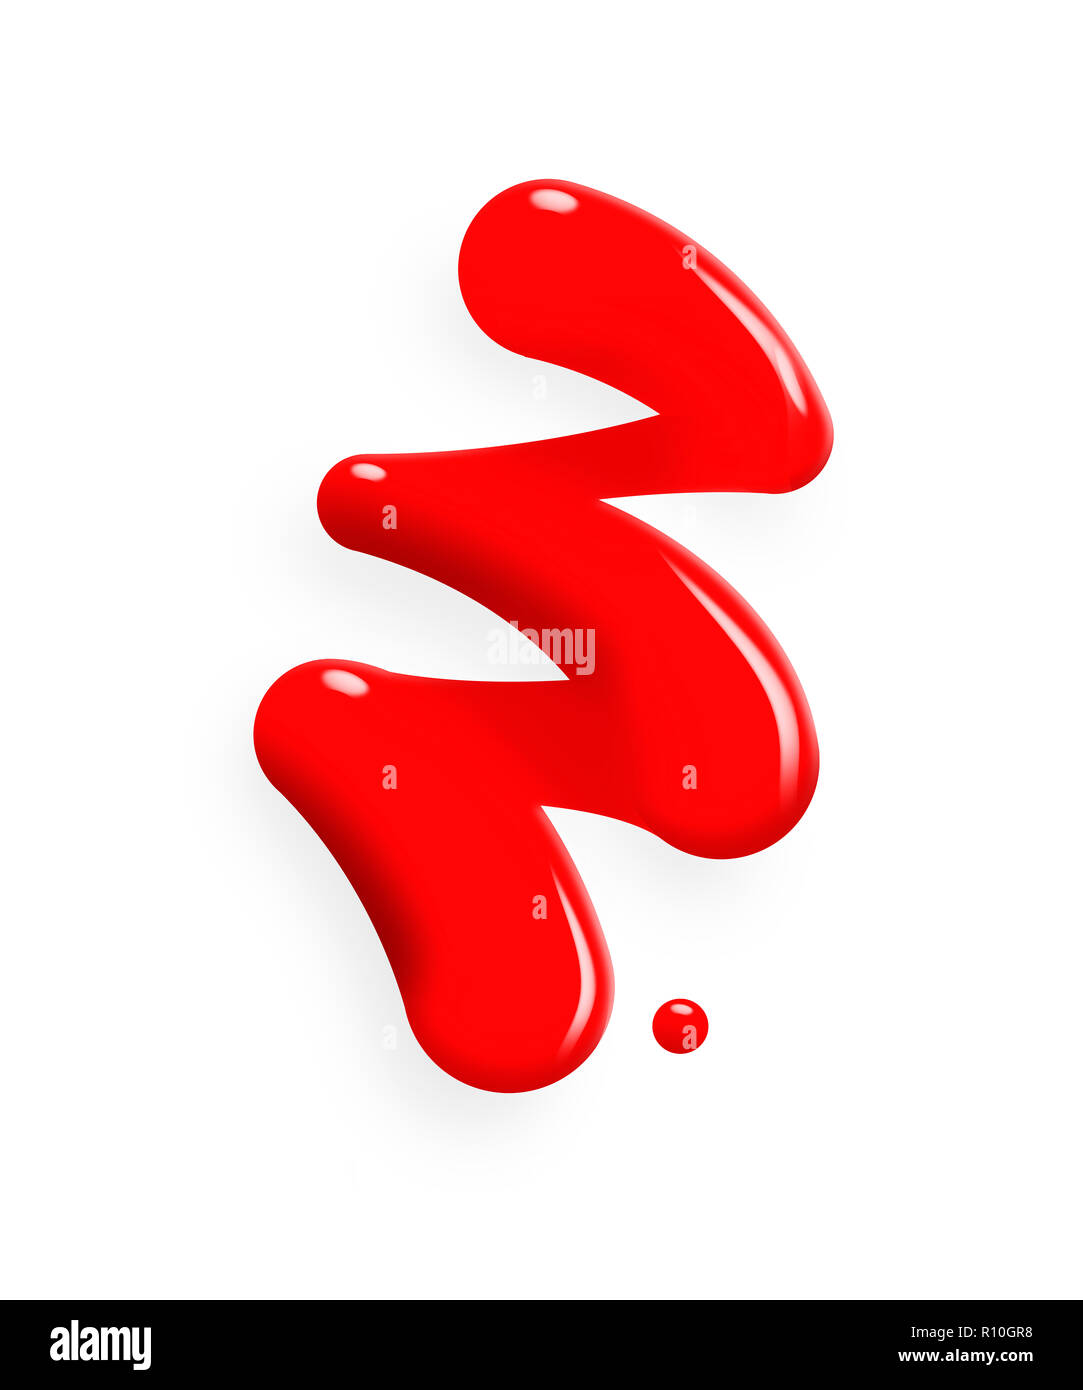 Digitales Bild von gegossenen roten Farbe in Zick-Zack-Form auf weißem Hintergrund Stockfoto